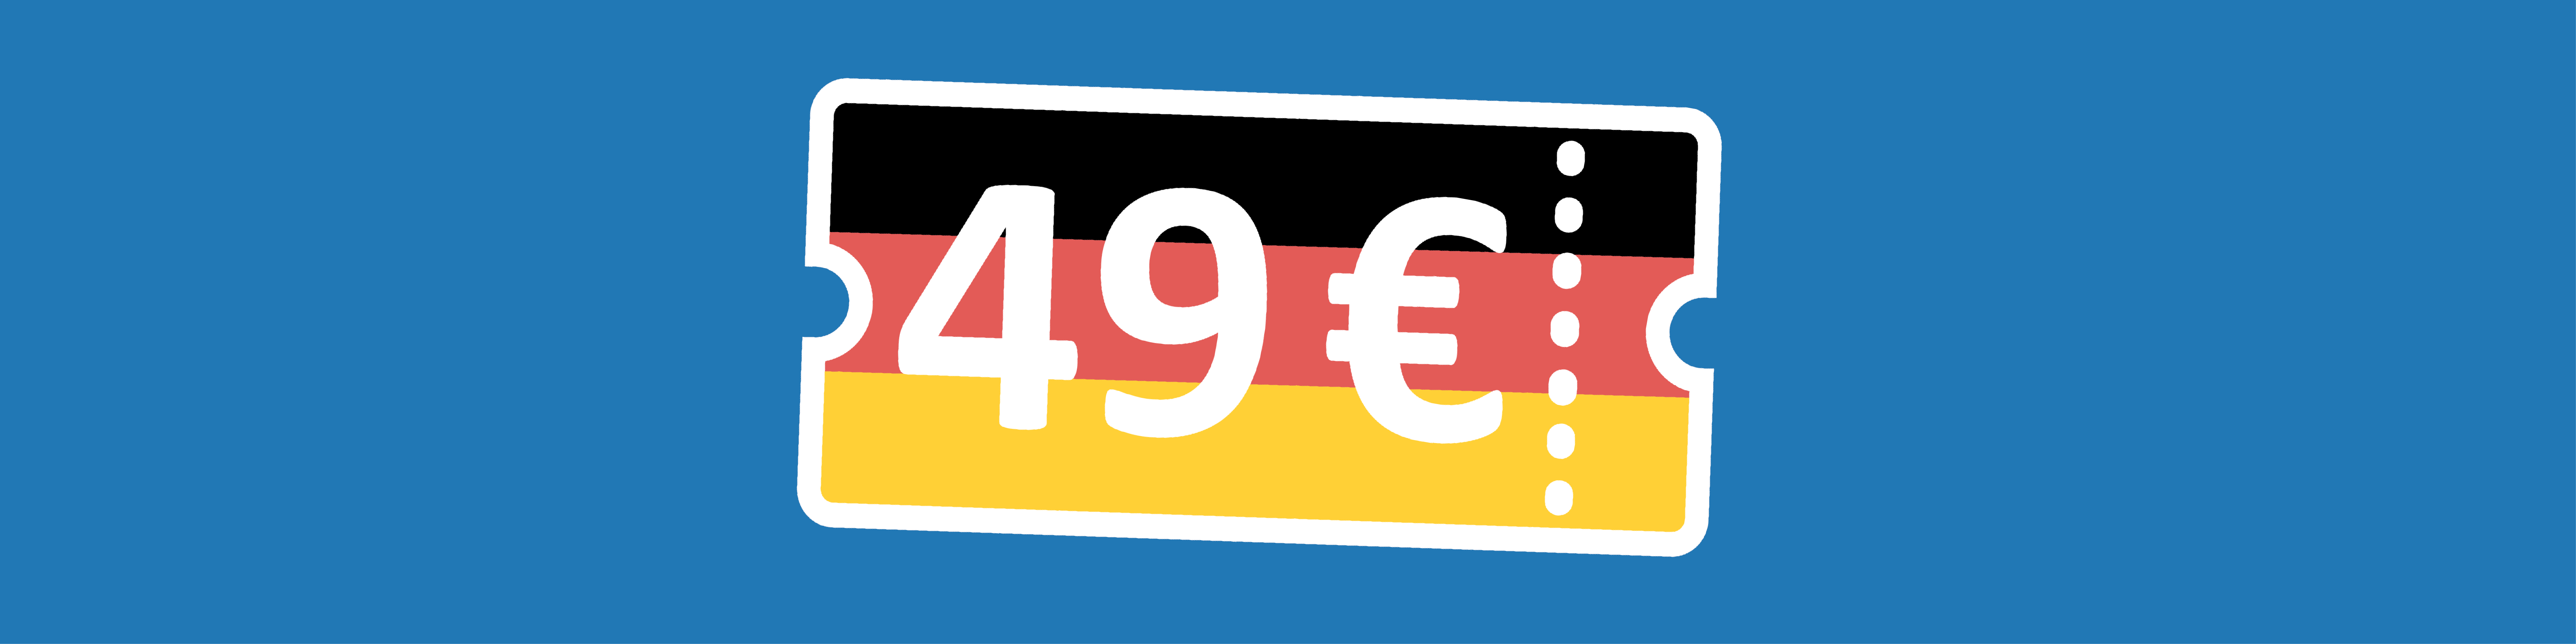 49 Euro Banner Deutschlandticket